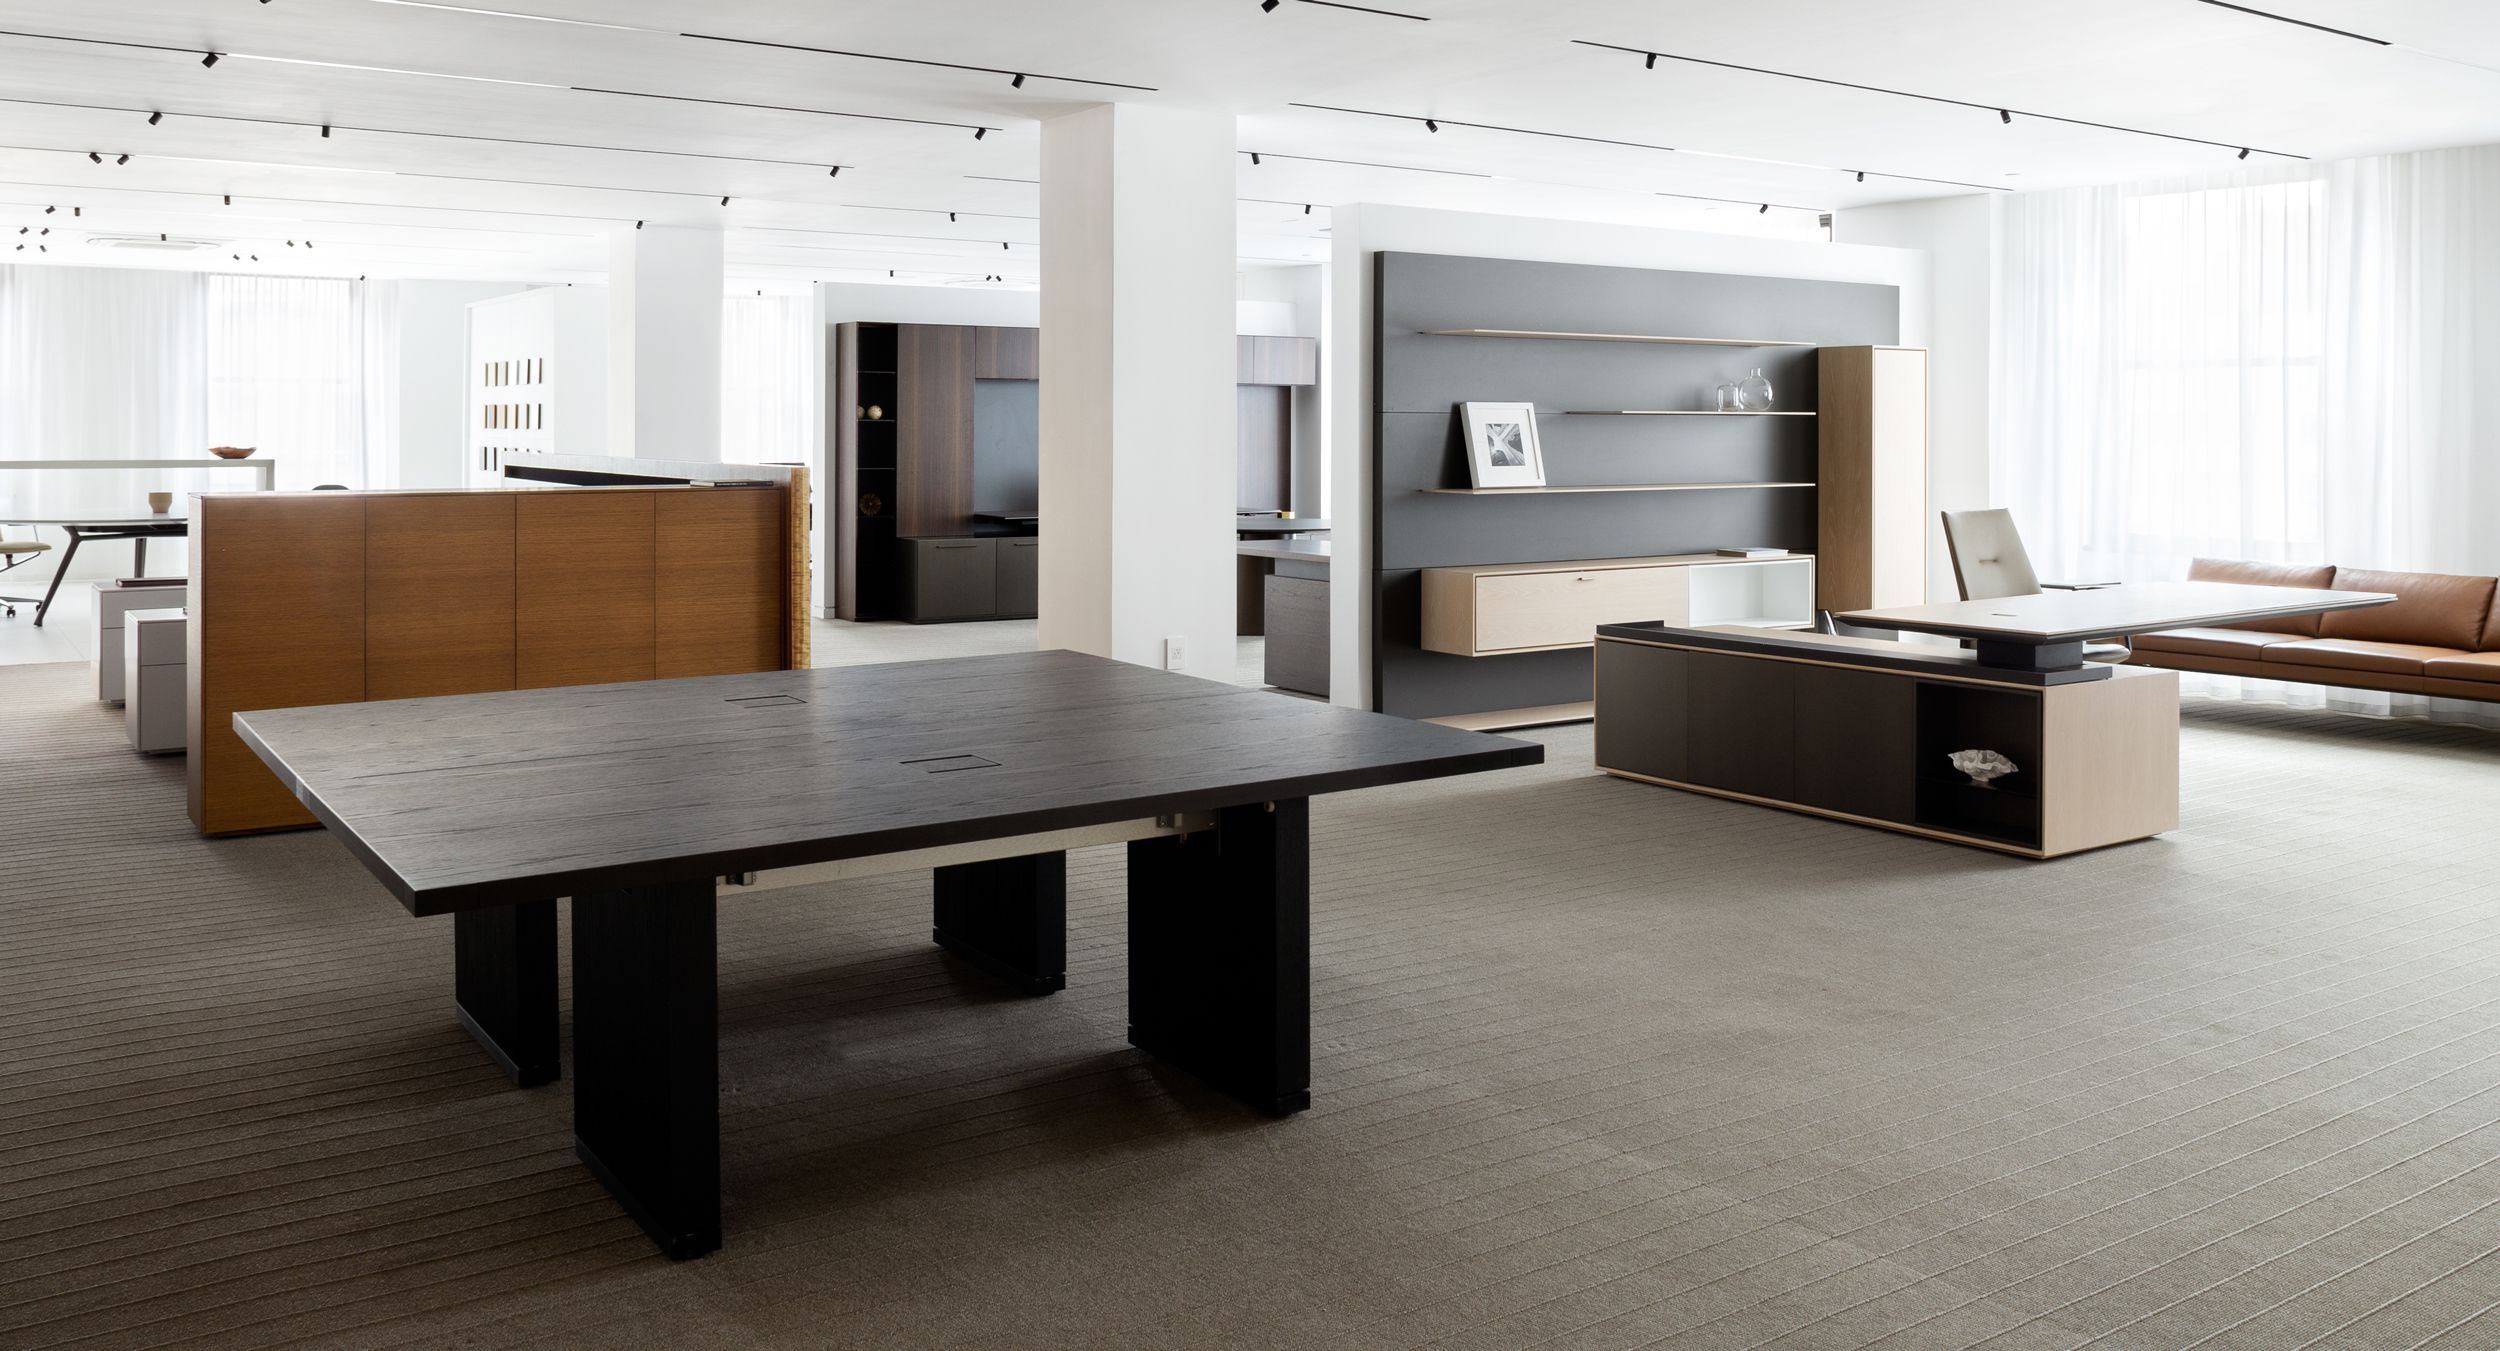 Reconfigurable MOTUS tables in Black Oak elevate flexible meeting spaces.